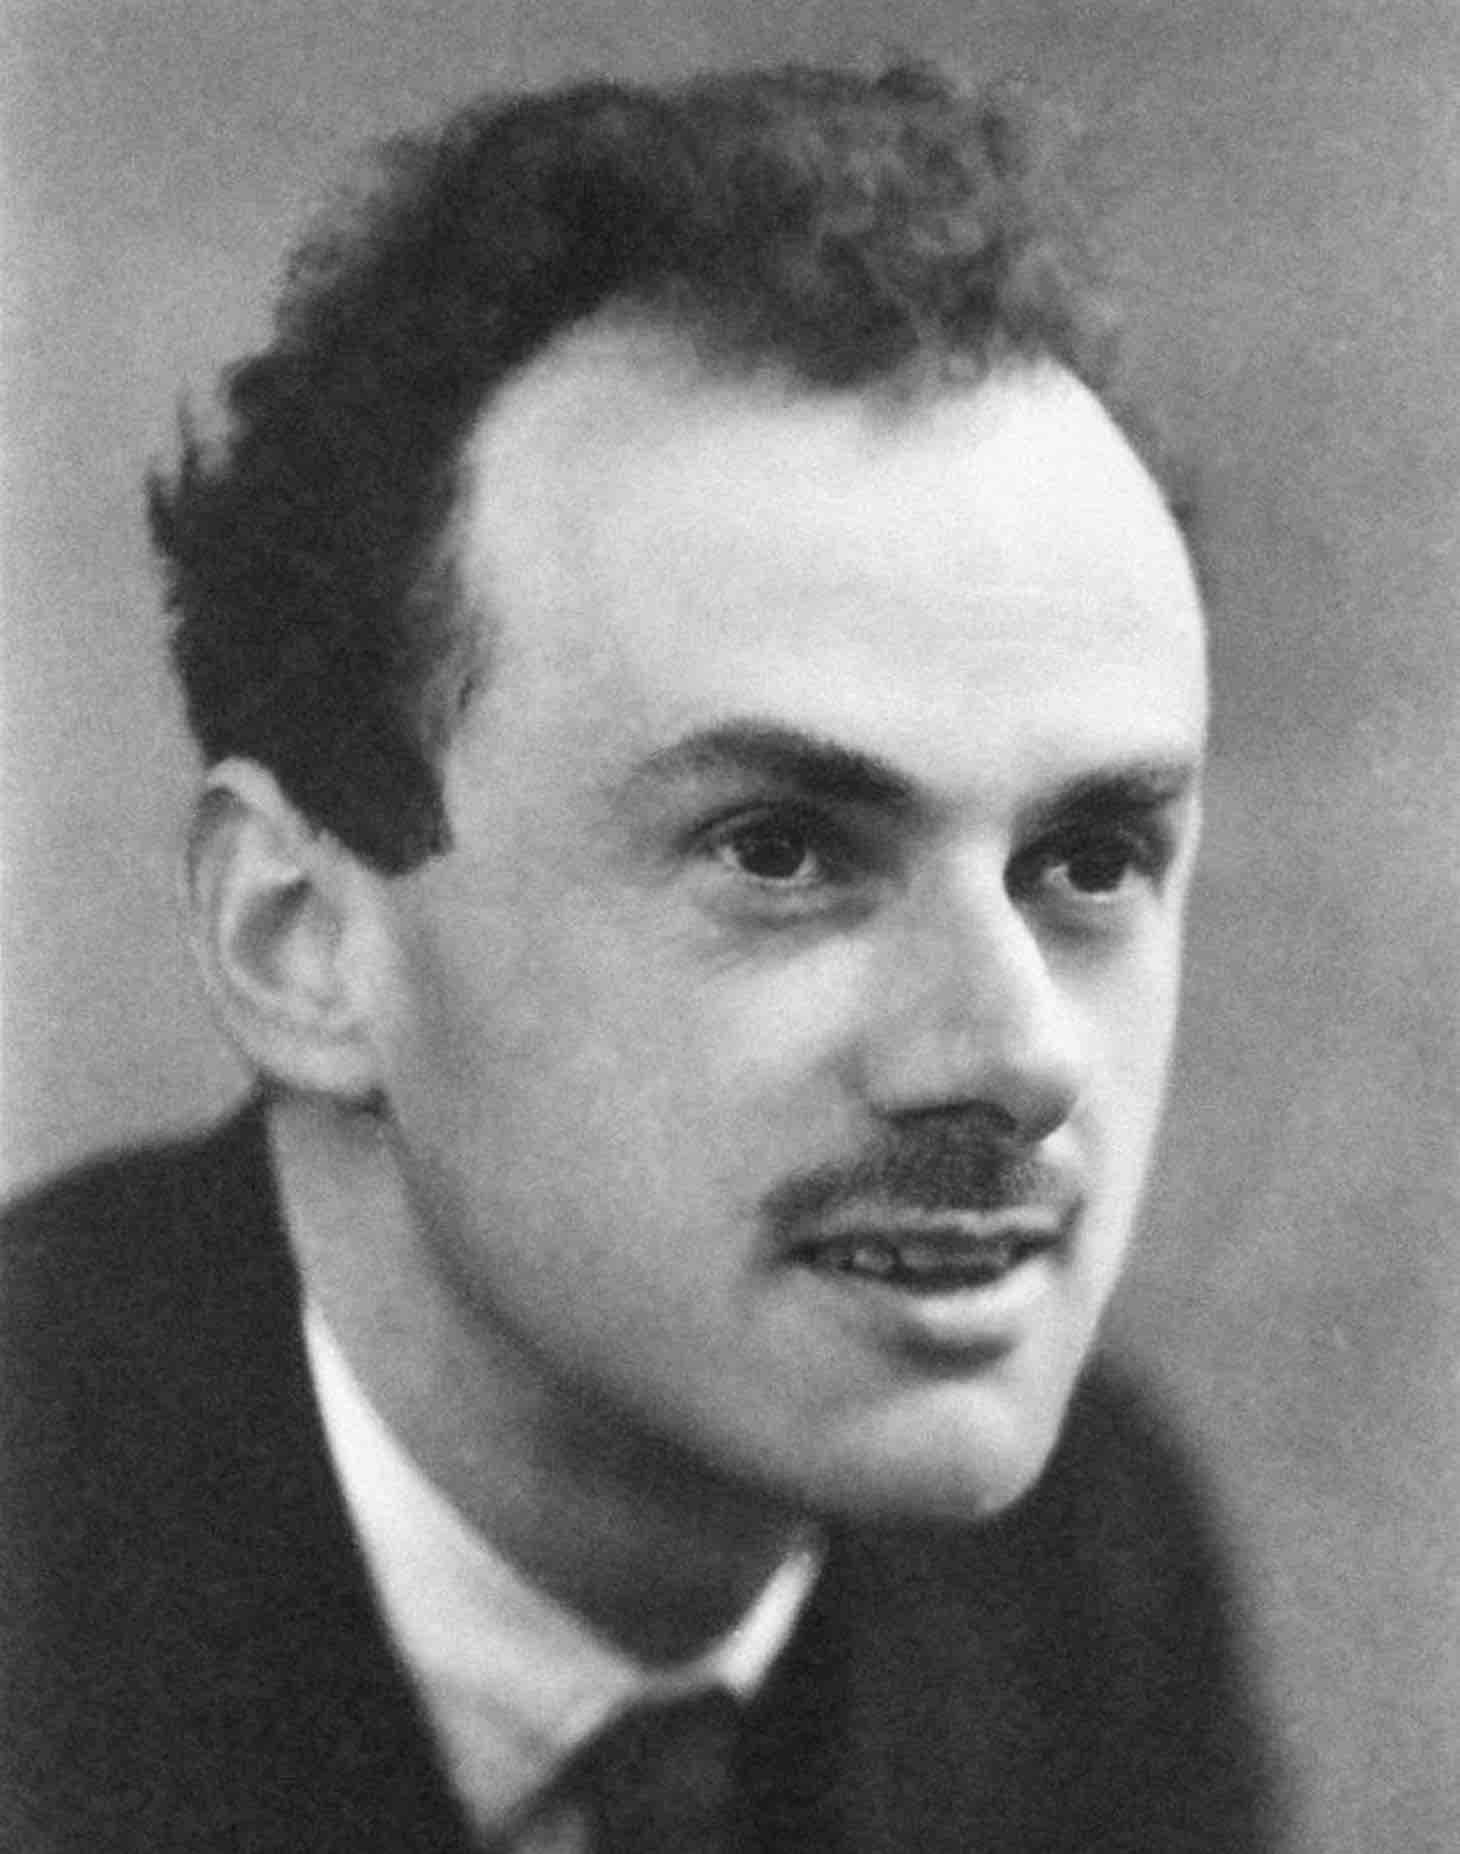 Paul Dirac (1902-1984)